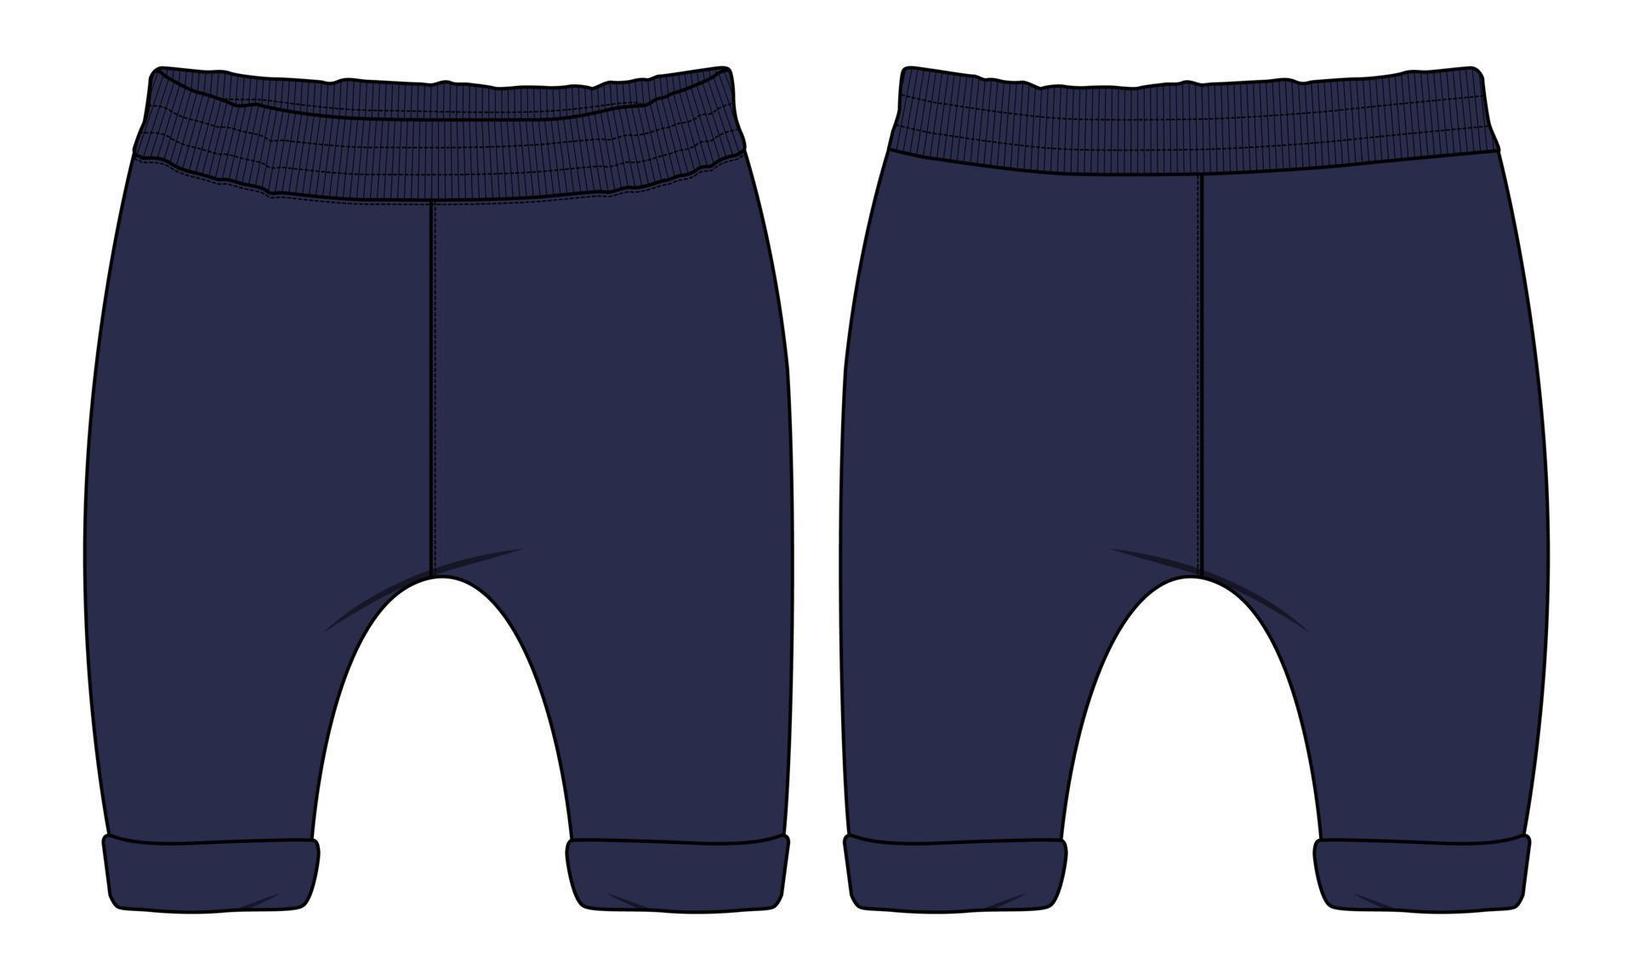 pantalons de survêtement en tissu molletonné mode technique croquis plat modèle d'illustration vectorielle pour les enfants vecteur